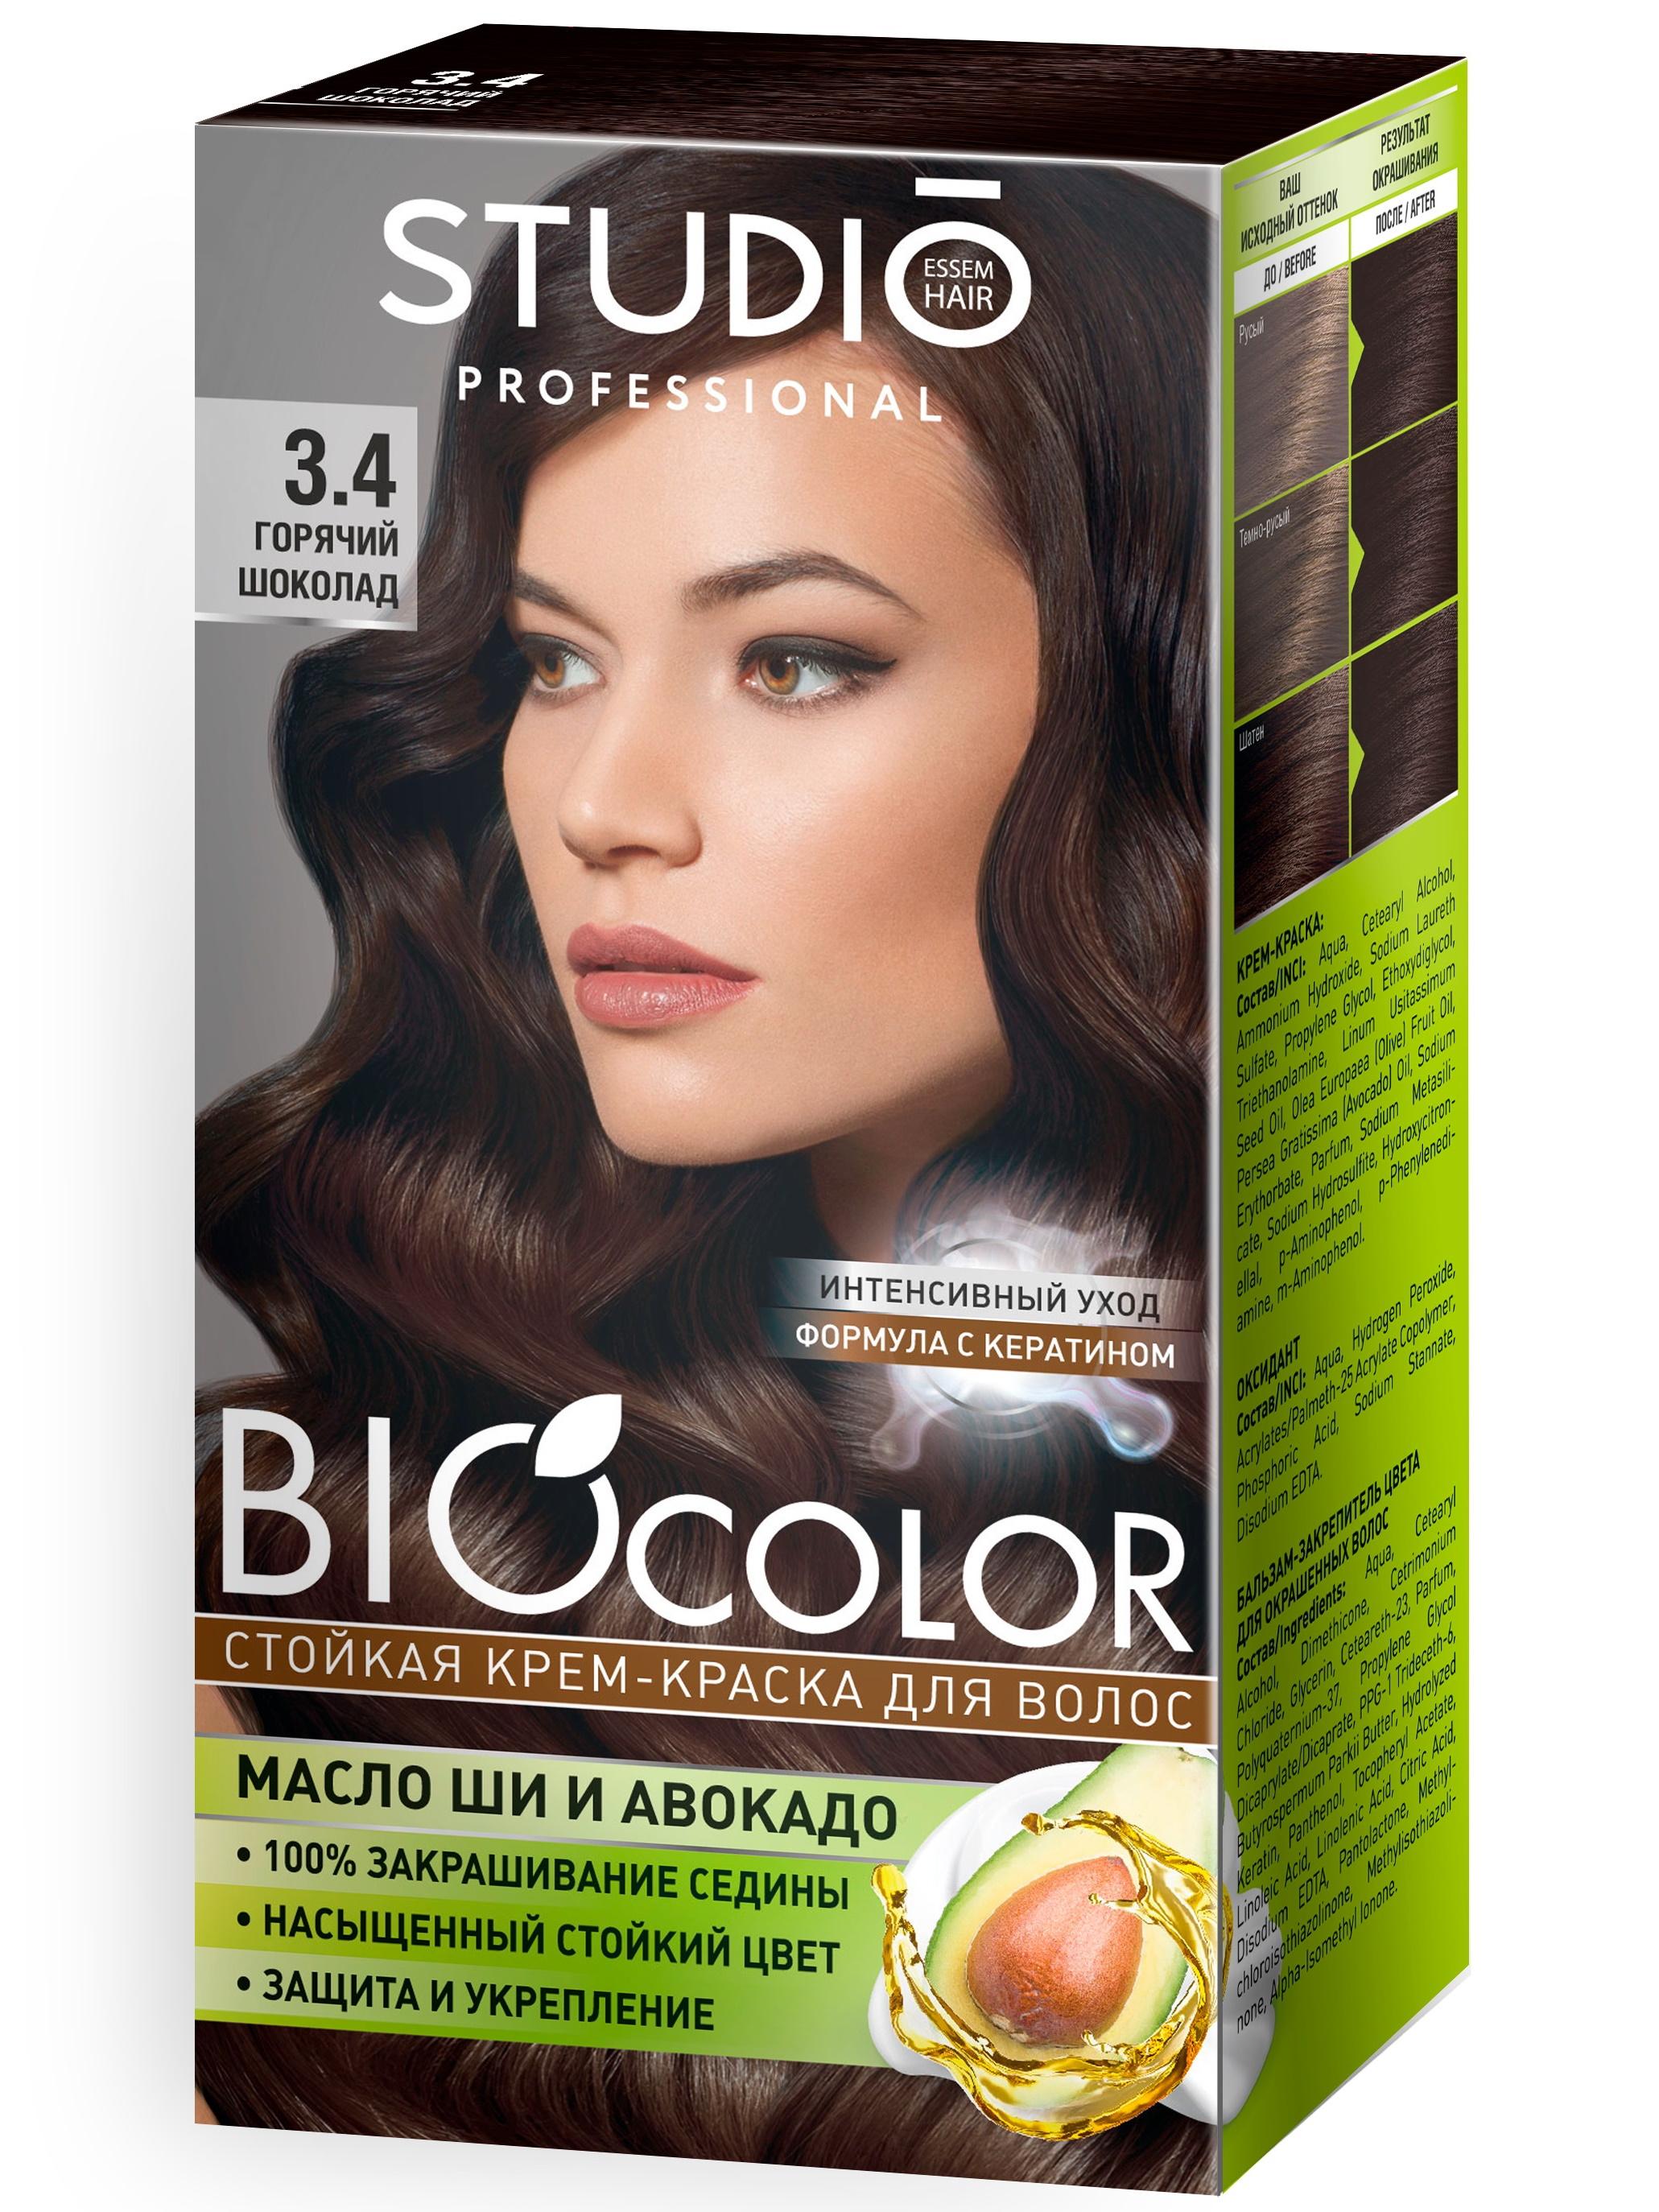 Крем-краска для волос Biocolor стойкая 3.4 горячий шоколад, 15 мл., картон